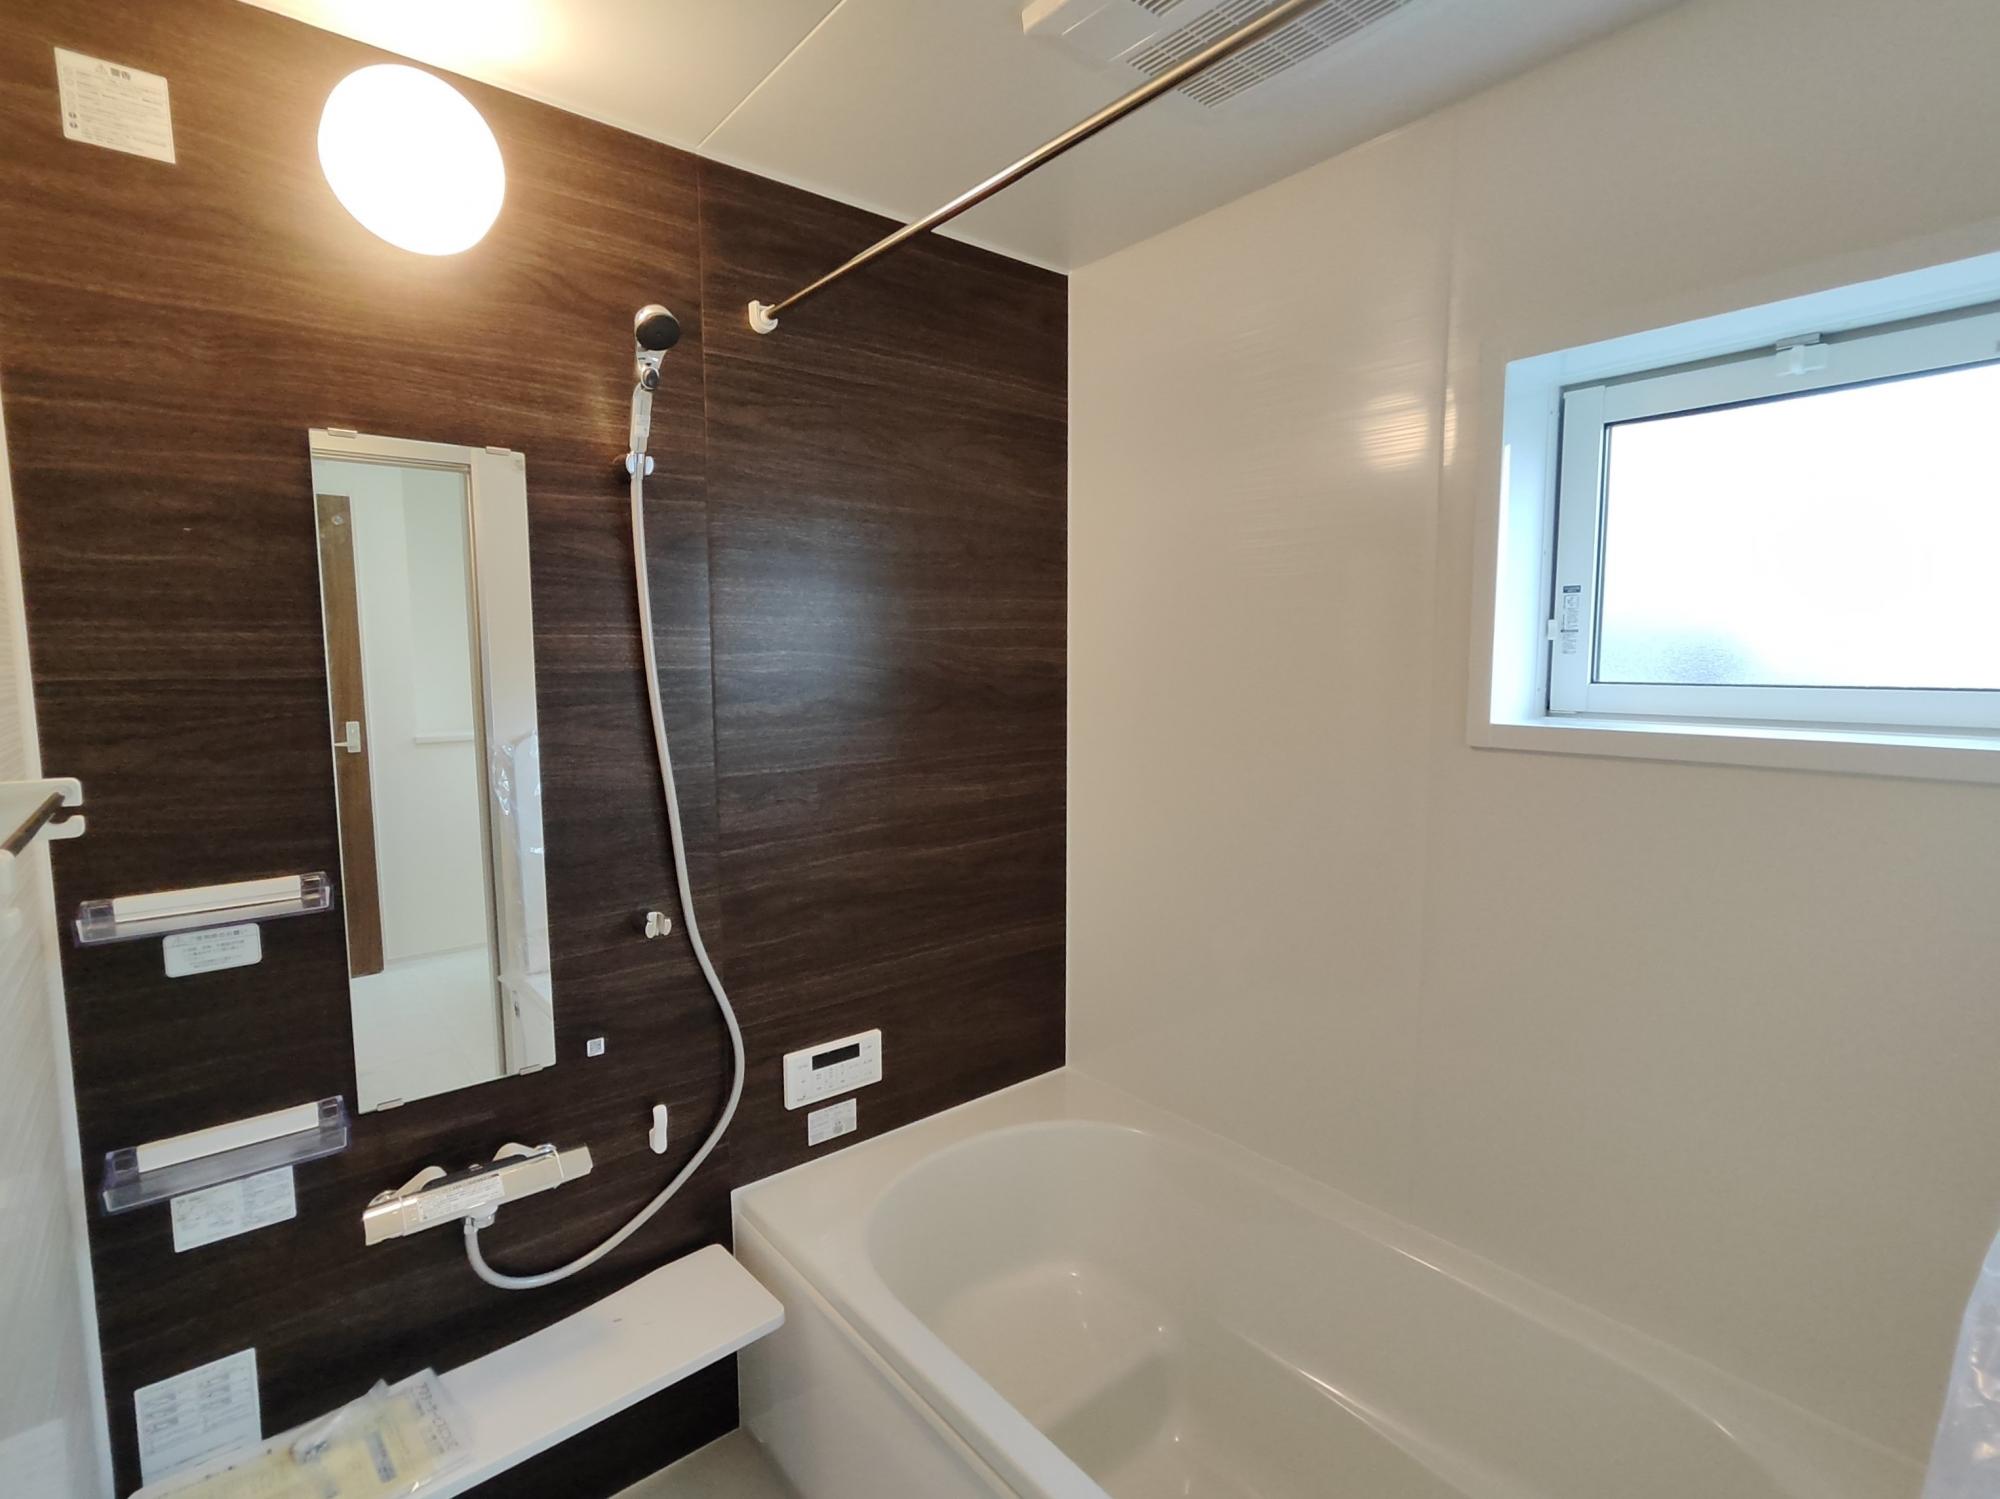 【1号棟】　アクセントクロス採用した浴室はオシャレで、一日の疲れが癒される空間に。高断熱浴槽を採用し、4時間たっても湯温低下は2.5℃以下なので光熱費の節約にもなります。